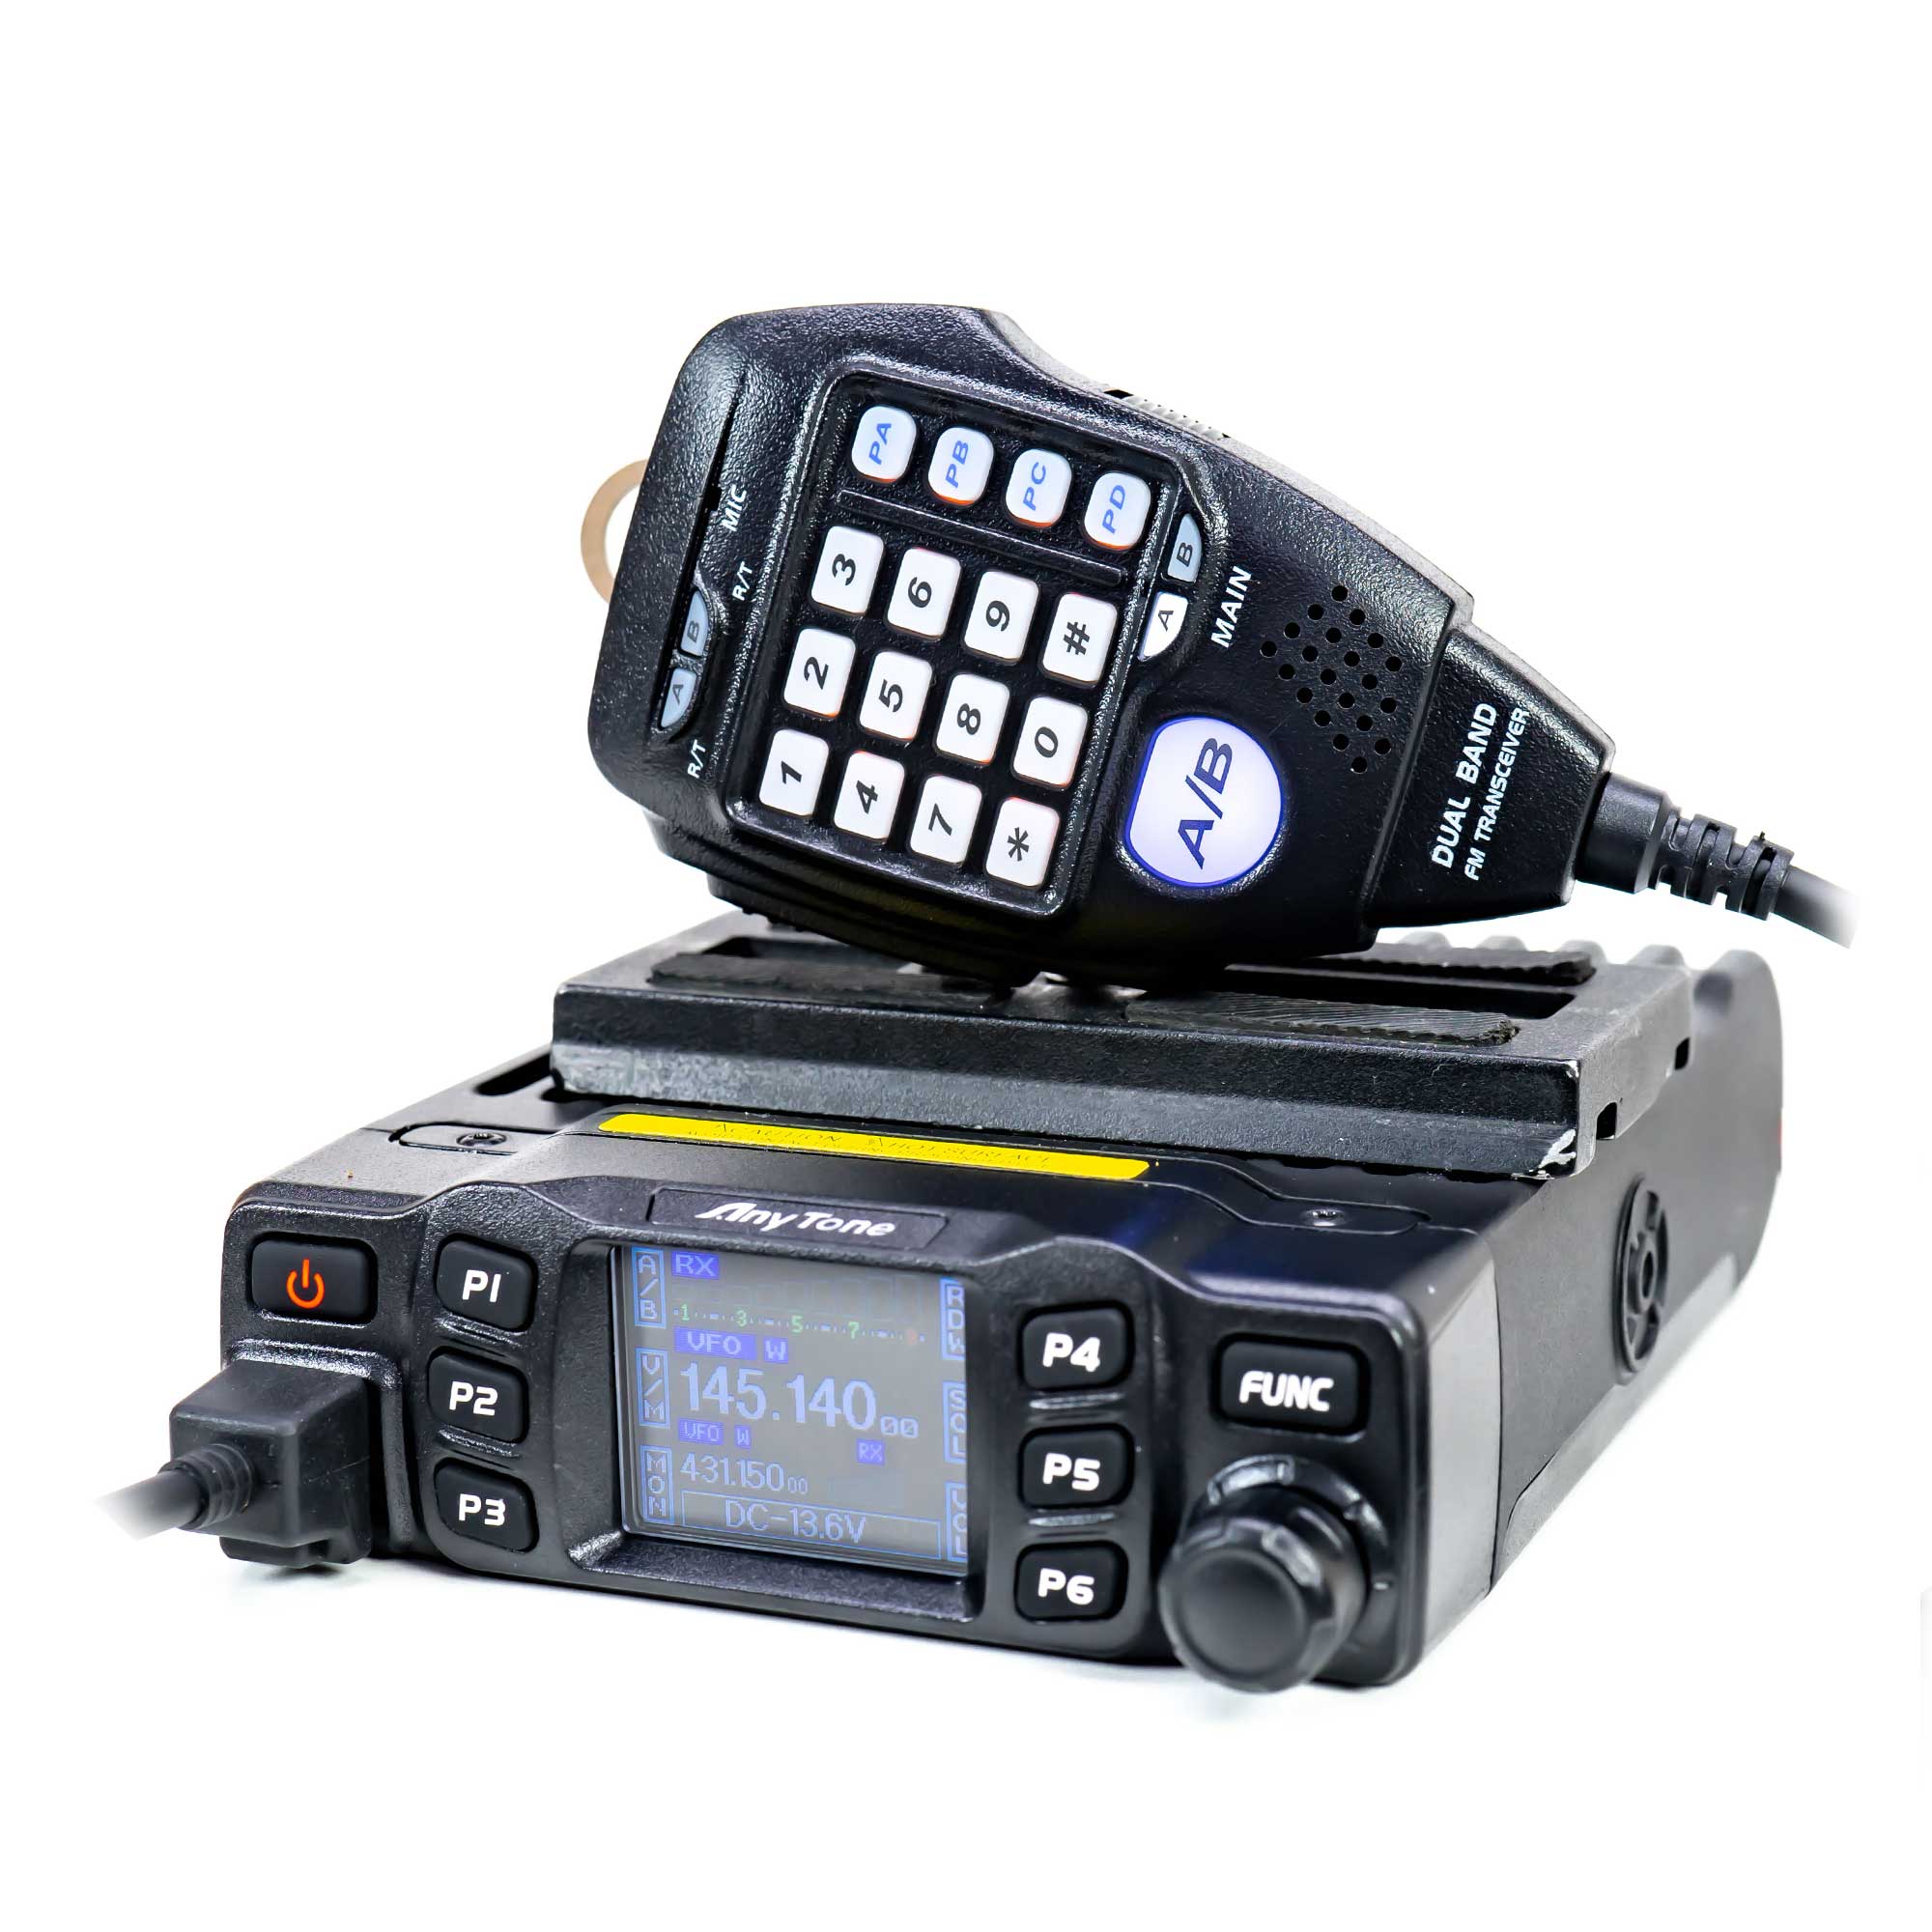 Statie radio VHF/UHF PNI Anytone AT-778UV dual band 144-146MHz/430-440Mhz